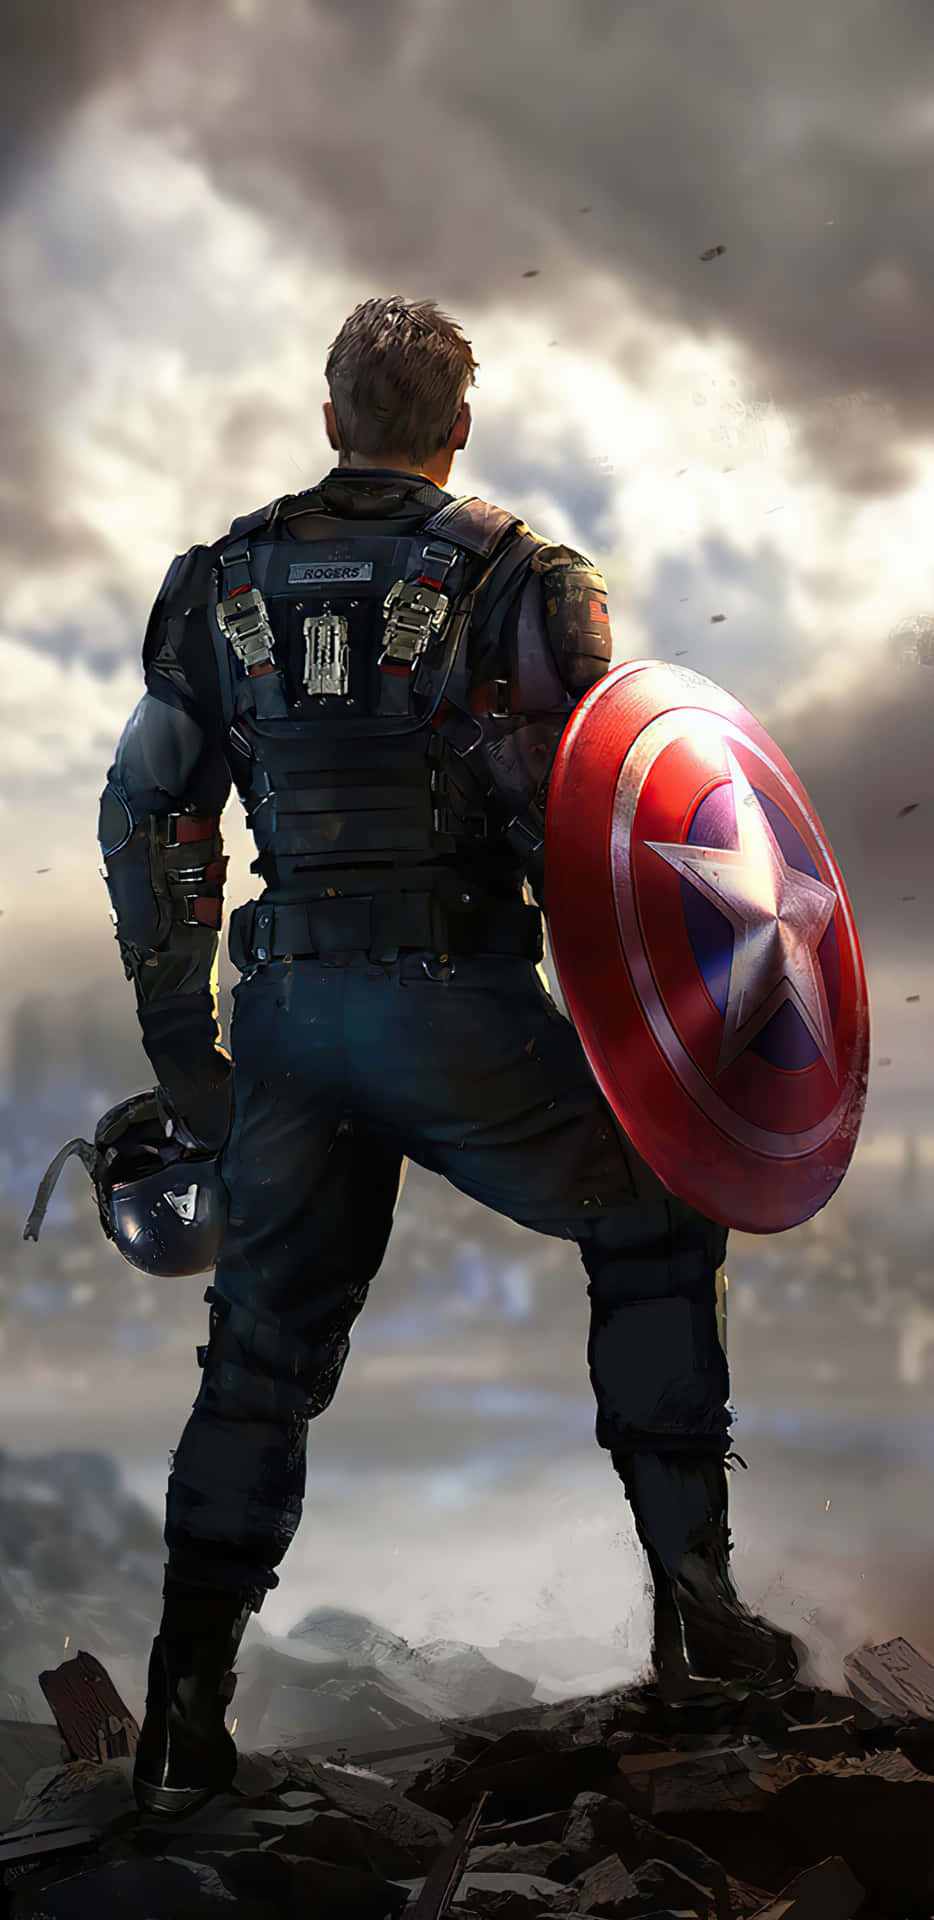 Fondode Pantalla De Captain America En Pixel 3xl Del Juego Marvel's Avengers